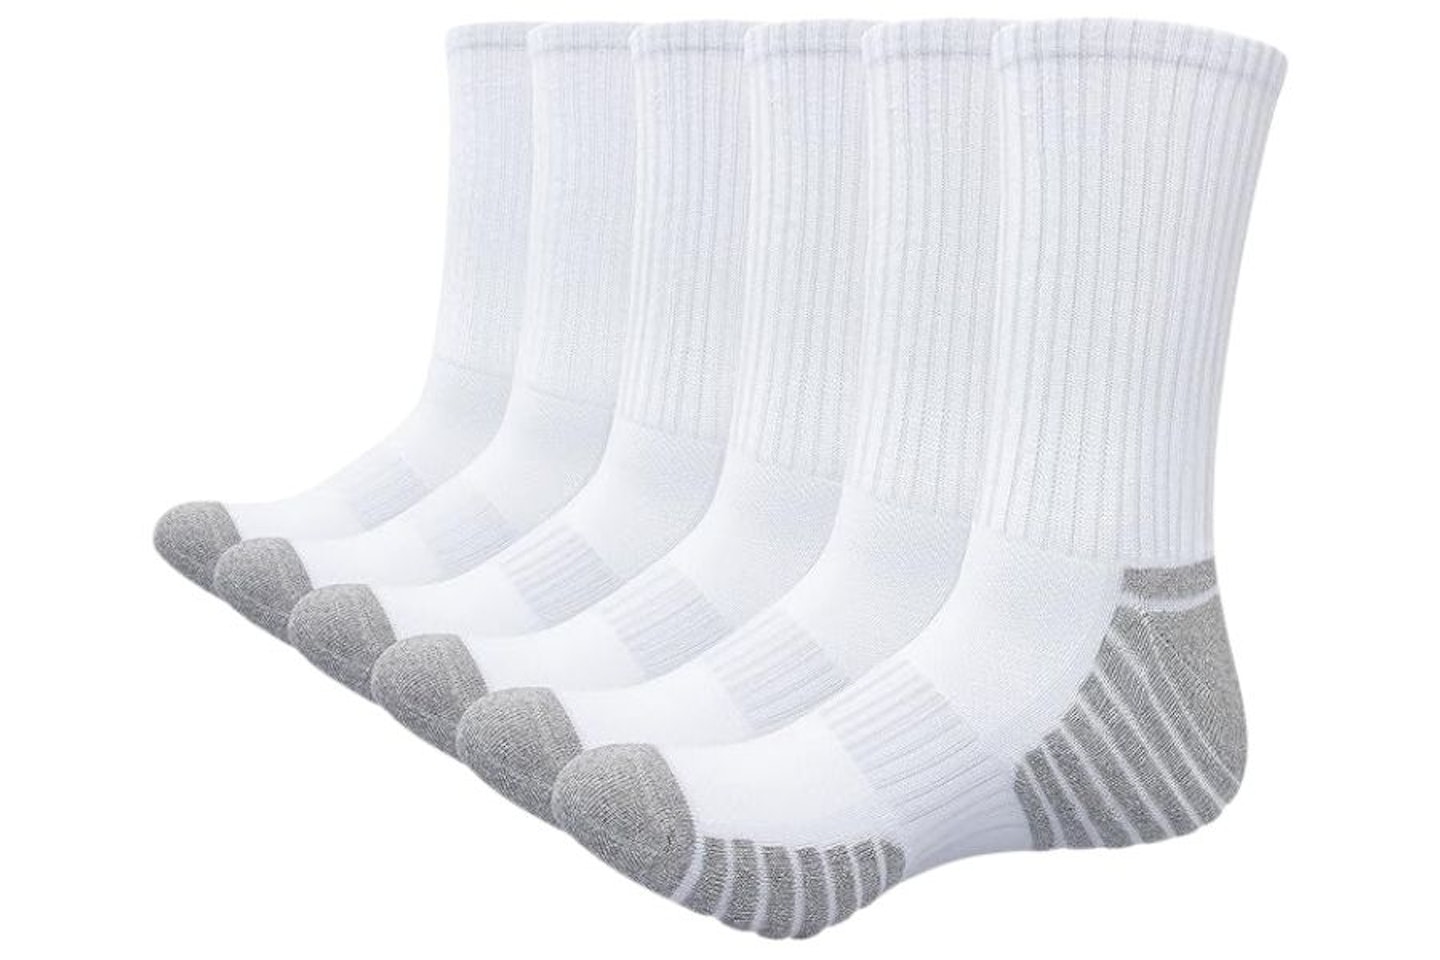 Alaplus socks